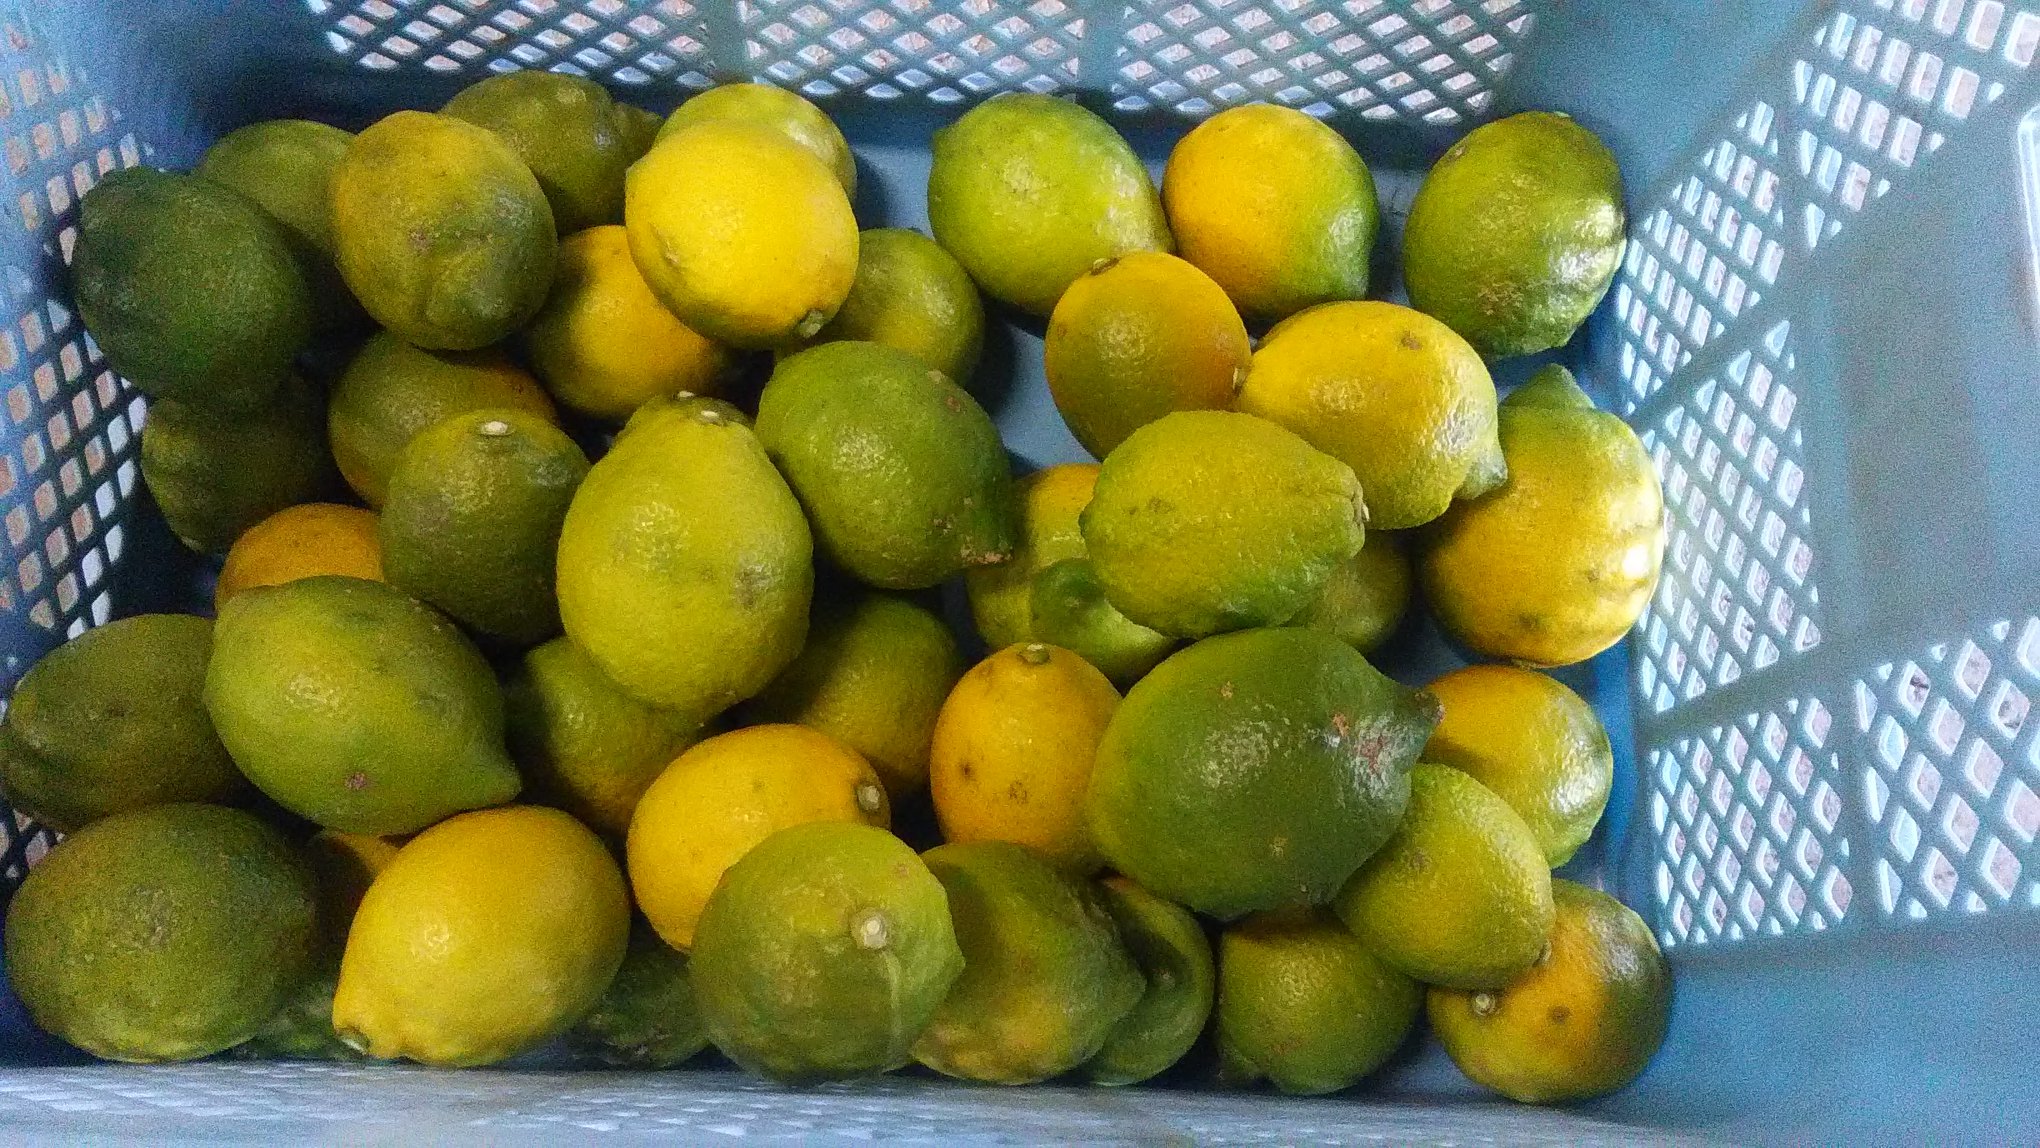 小田原の無農薬レモン 早生みかん 収穫の秋